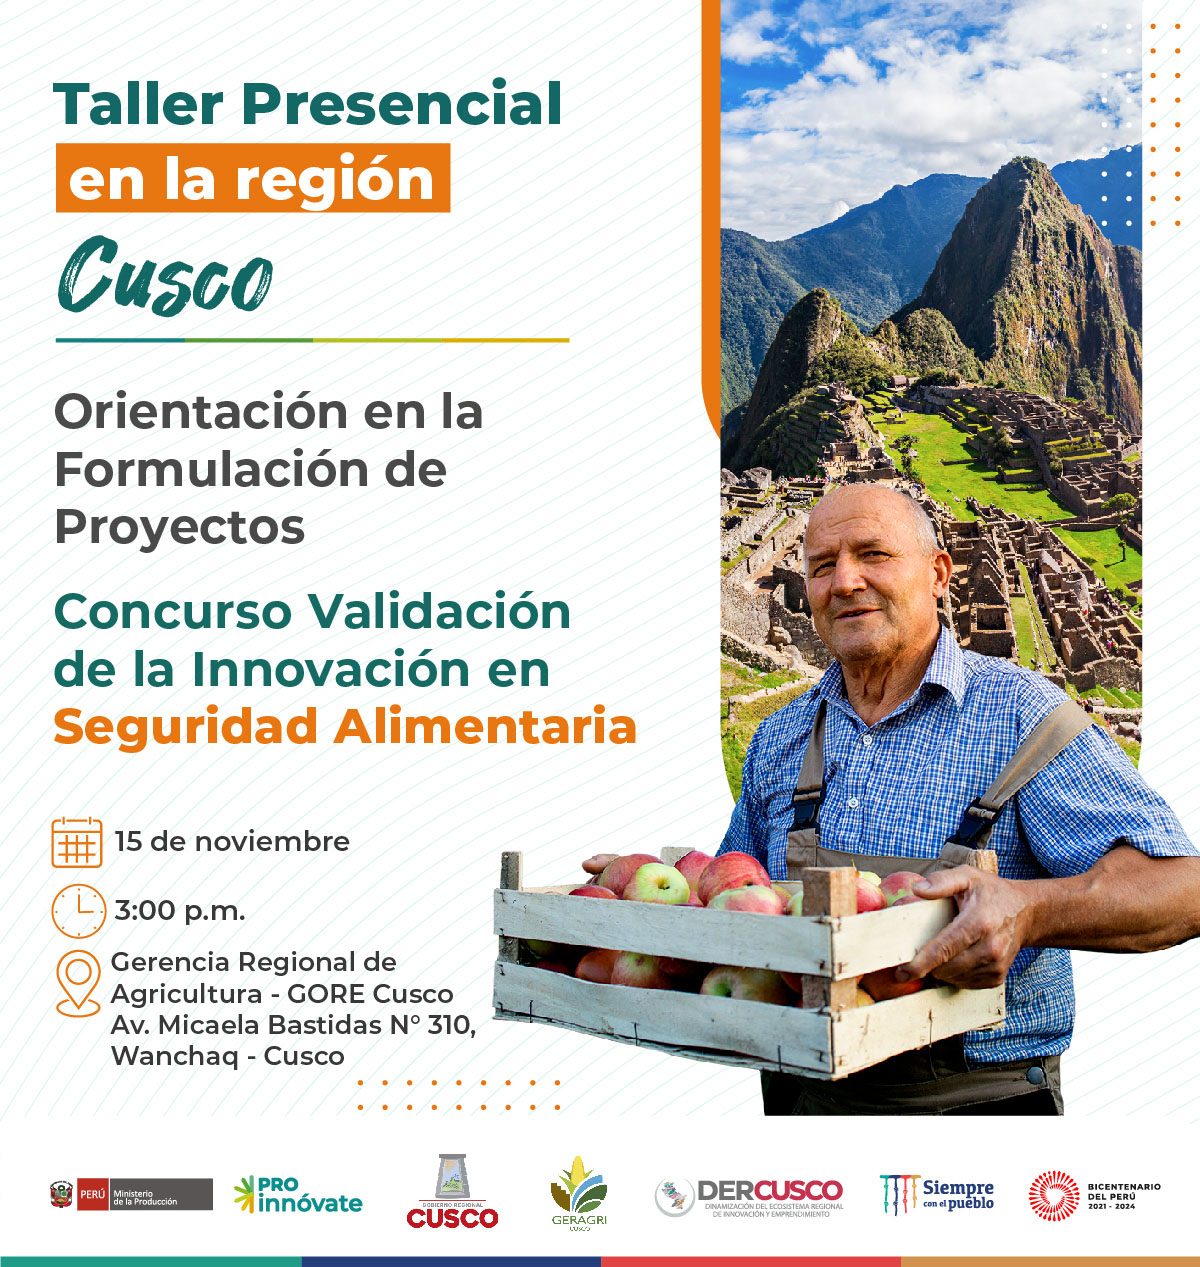 Cusco: Taller presencial de orientación en la formulación de Proyectos para postular al concurso de Validación de la Innovación en Seguridad Alimentaria